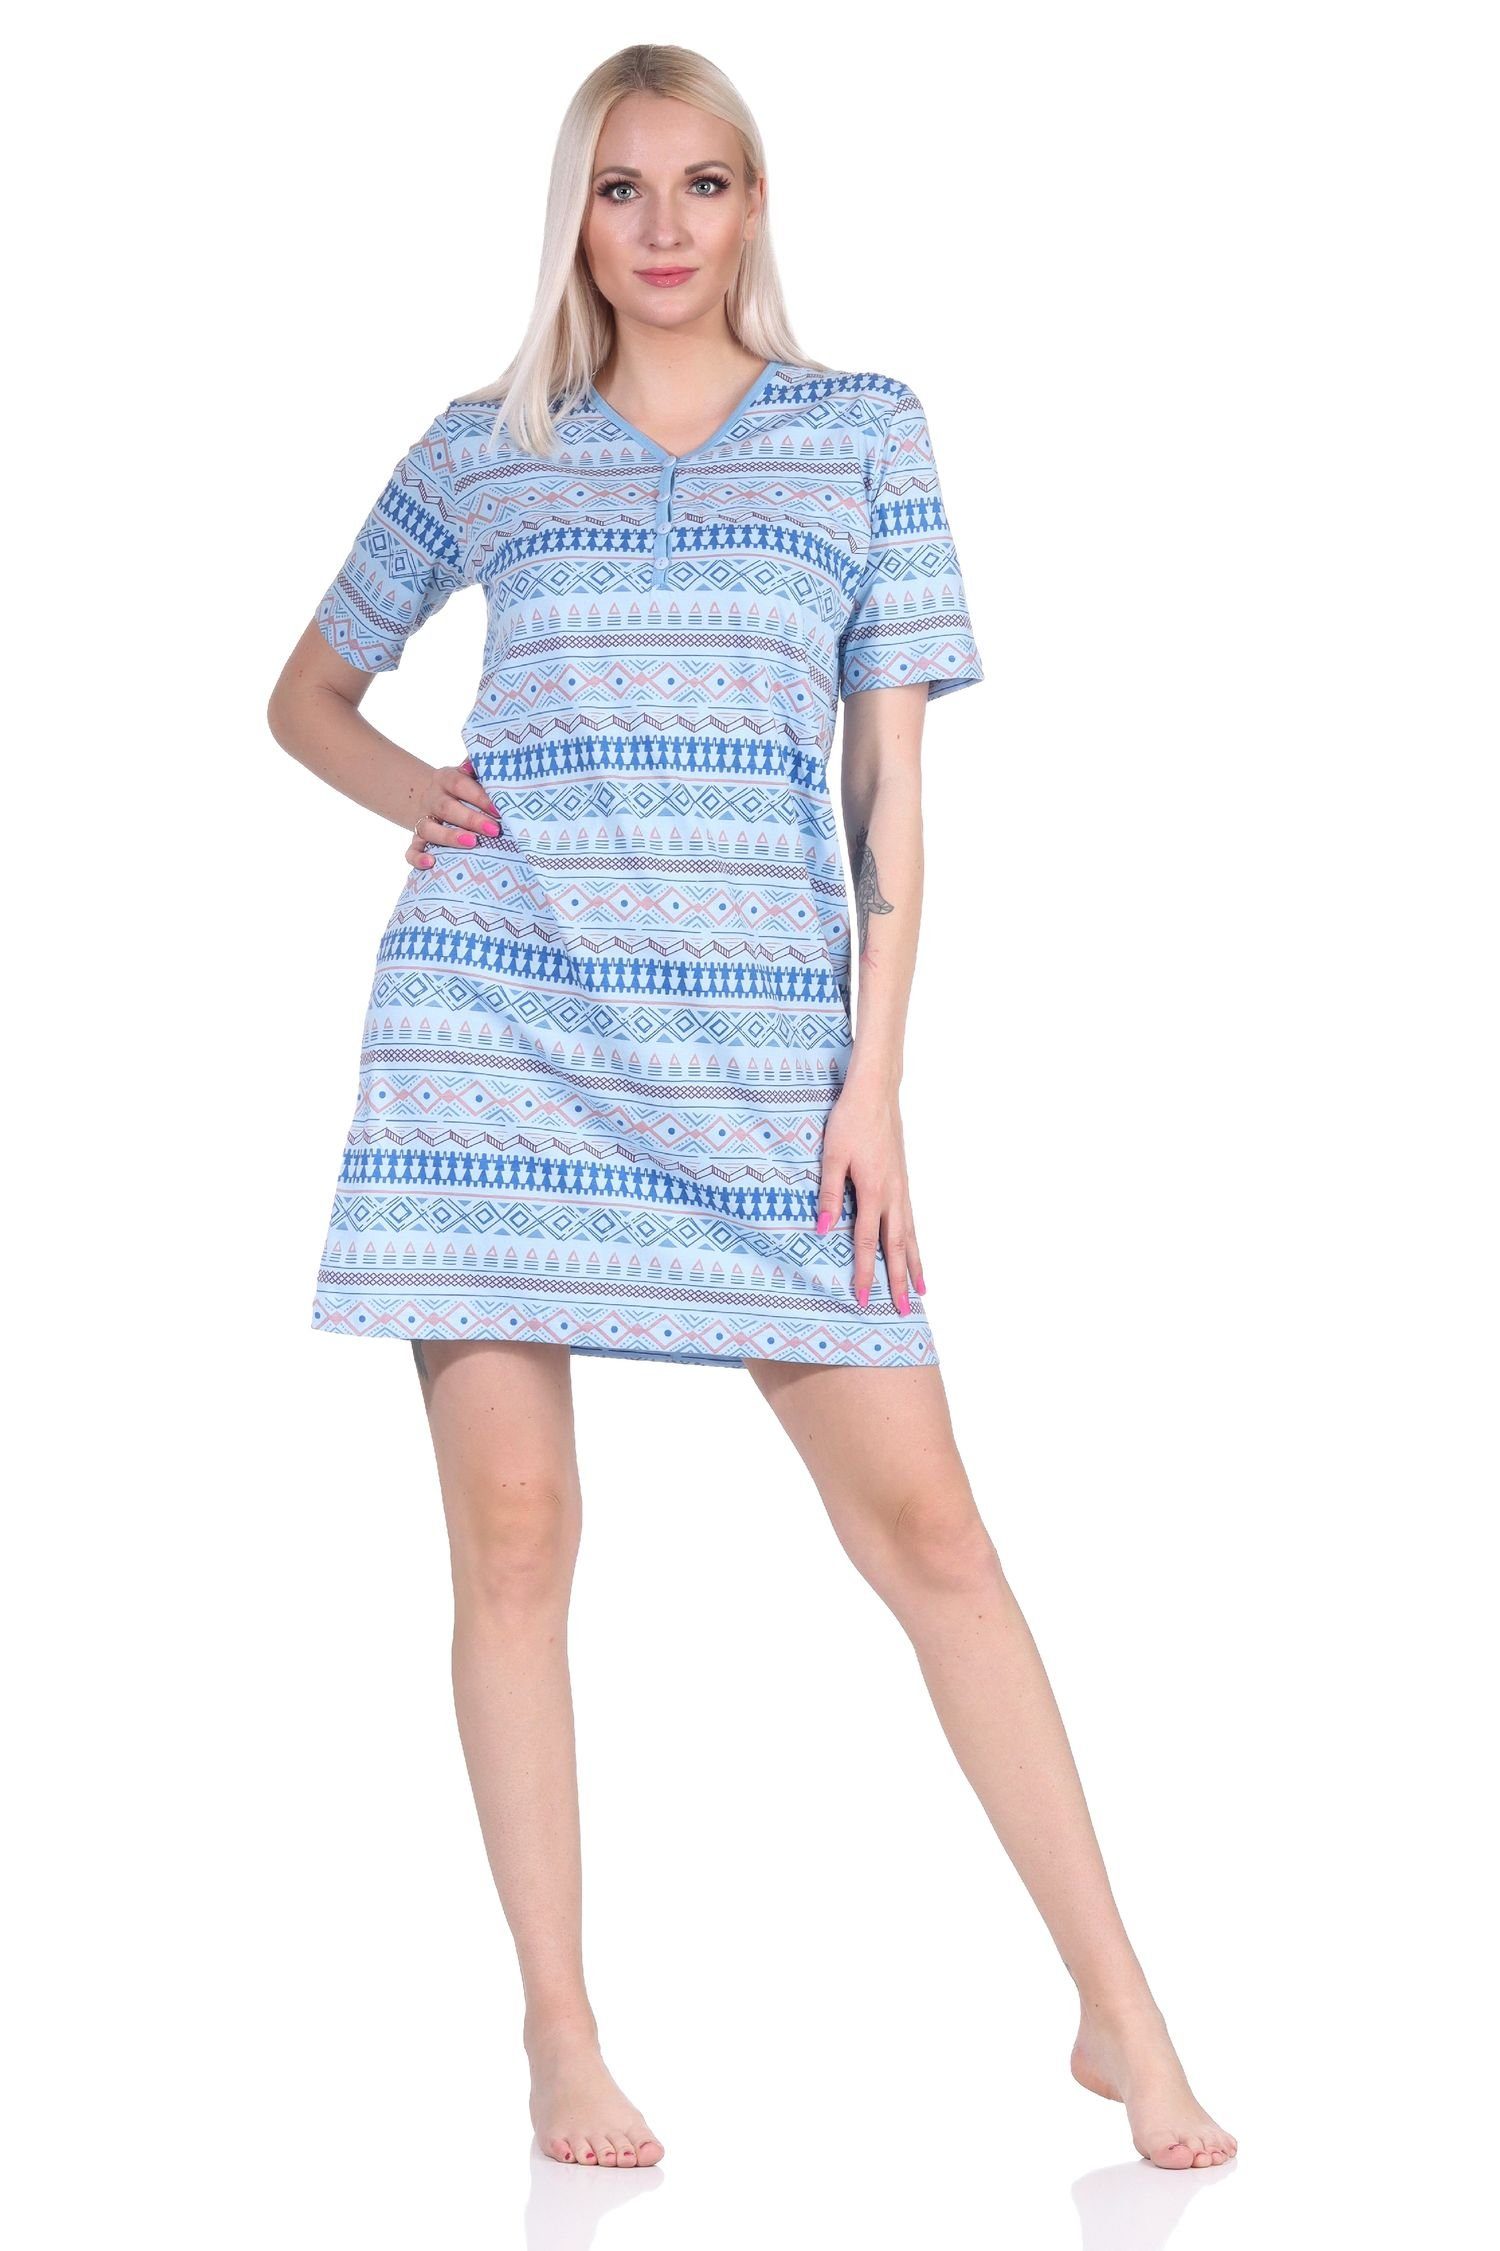 Normann Nachthemd Damen Nachthemd in hellblau - auch kurzarm Übergrößen Ethnolook im